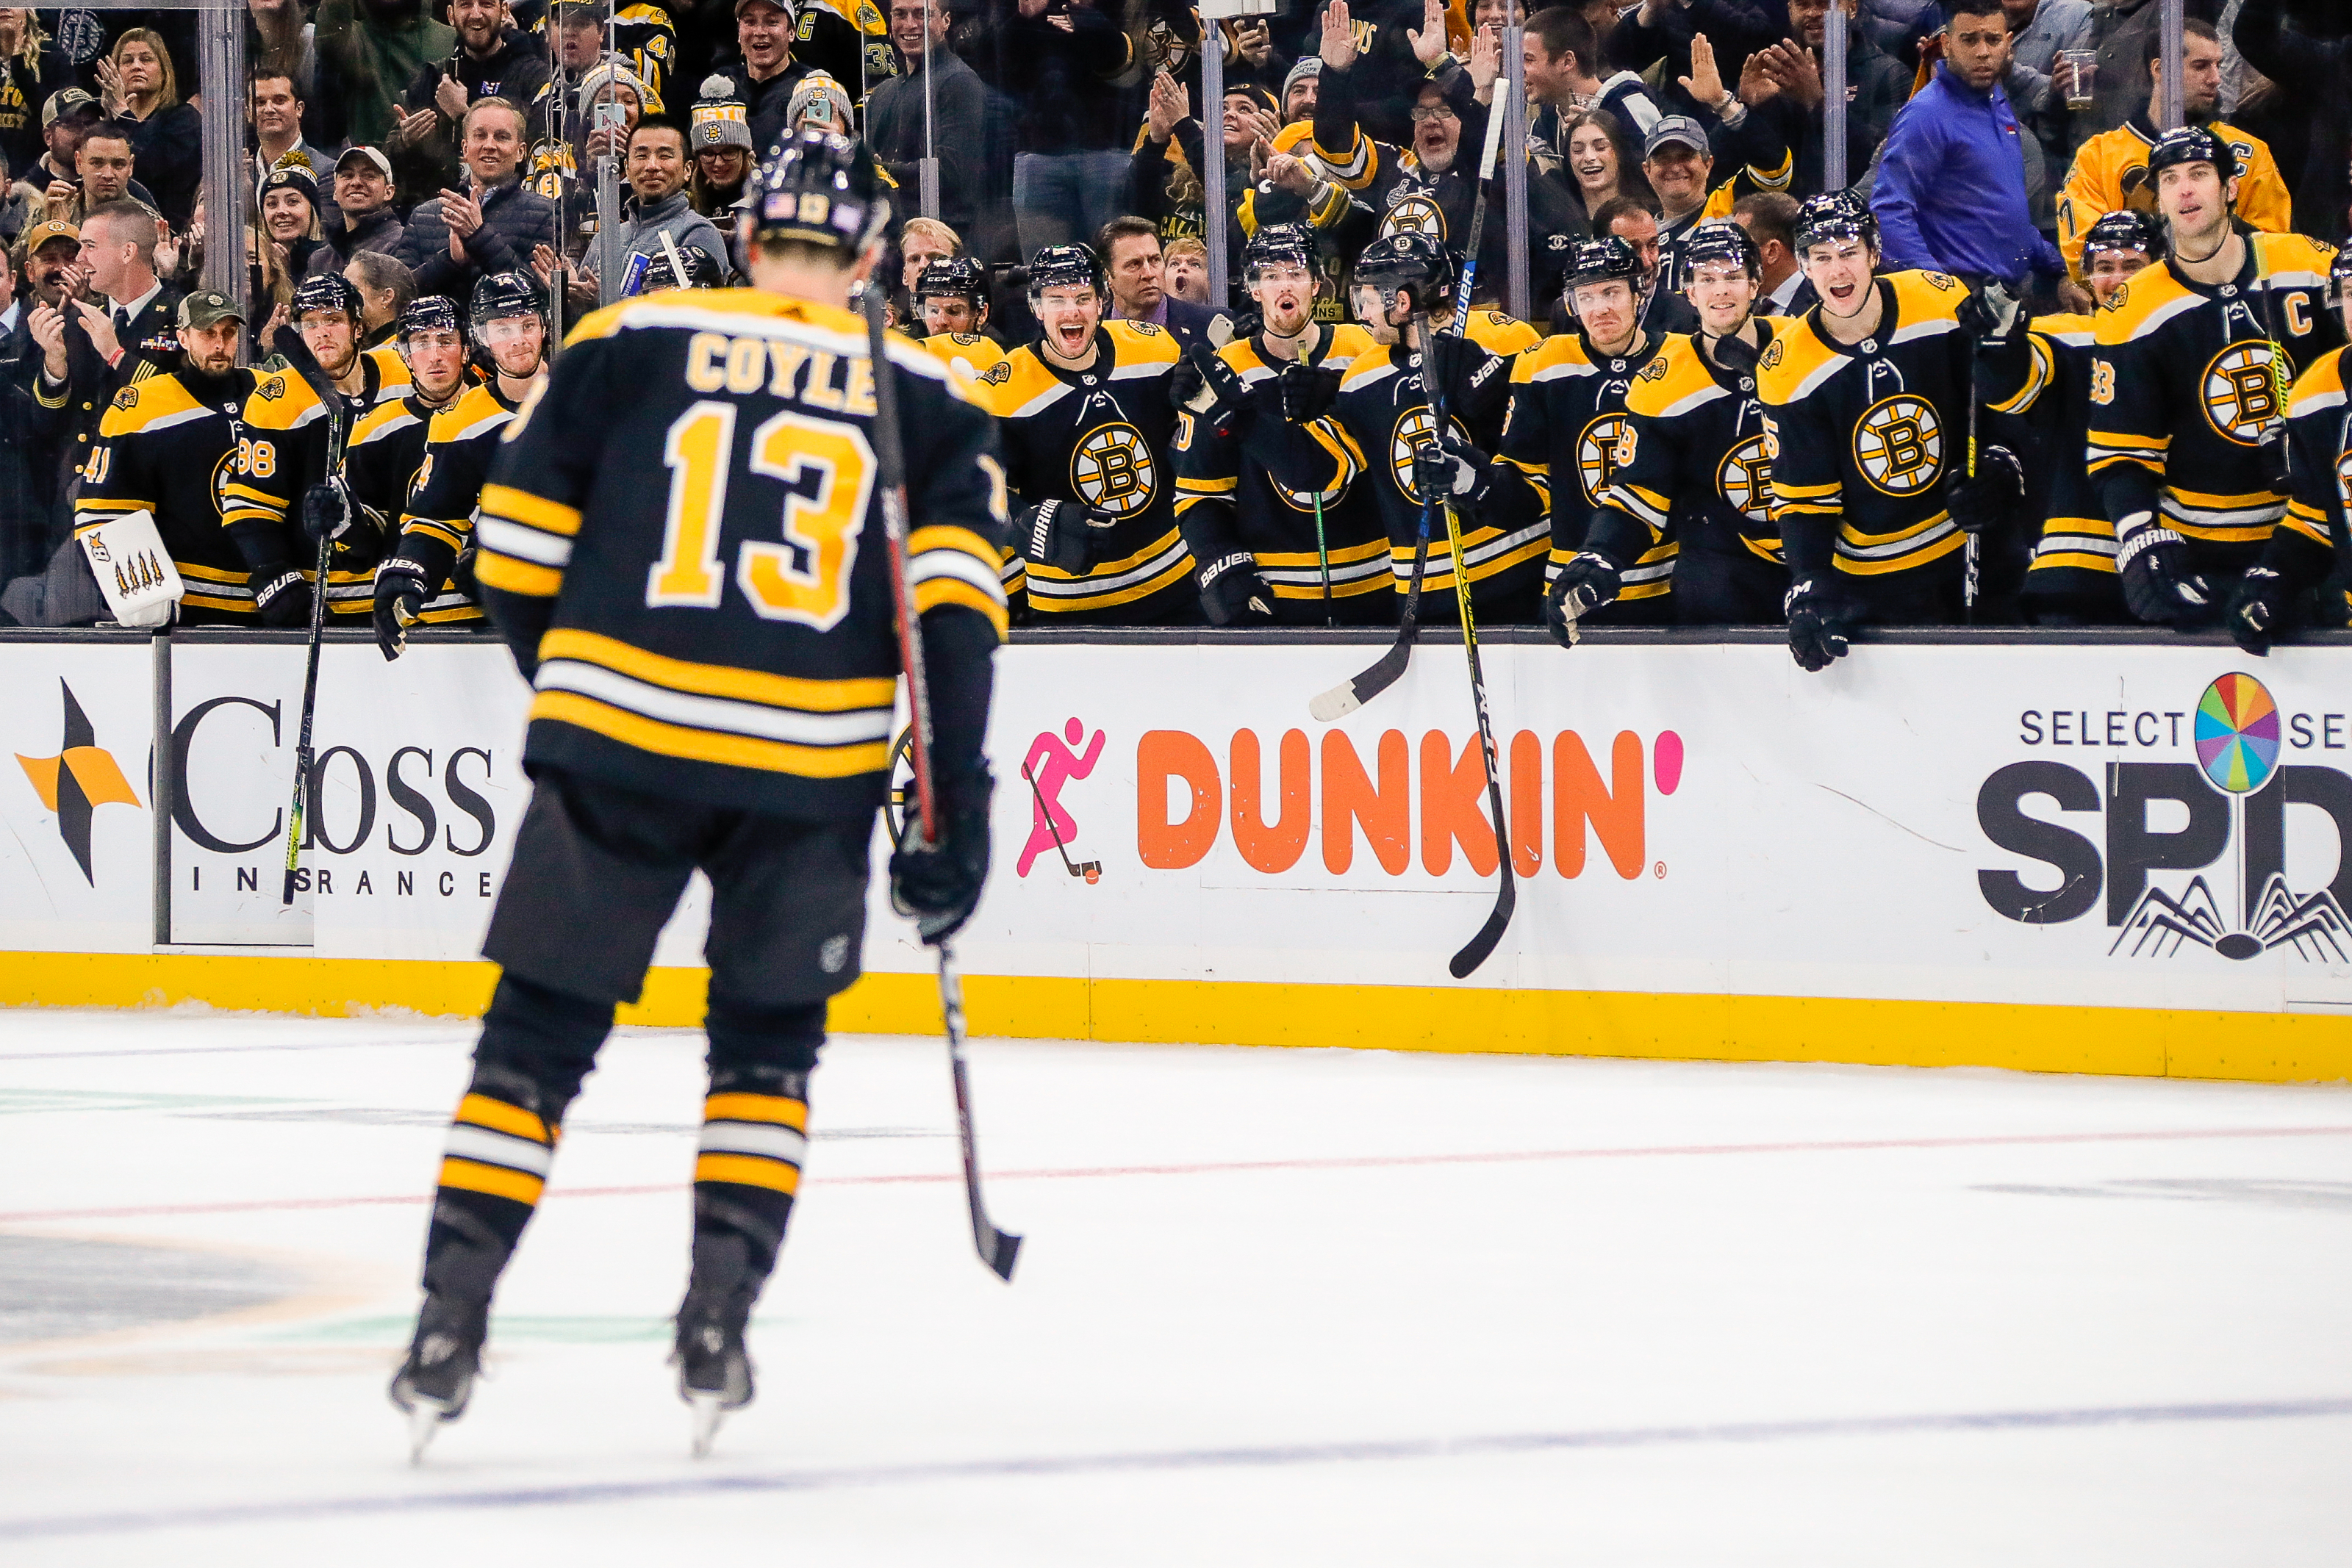 Charlie Coyle - Boston Bruins Center - ESPN